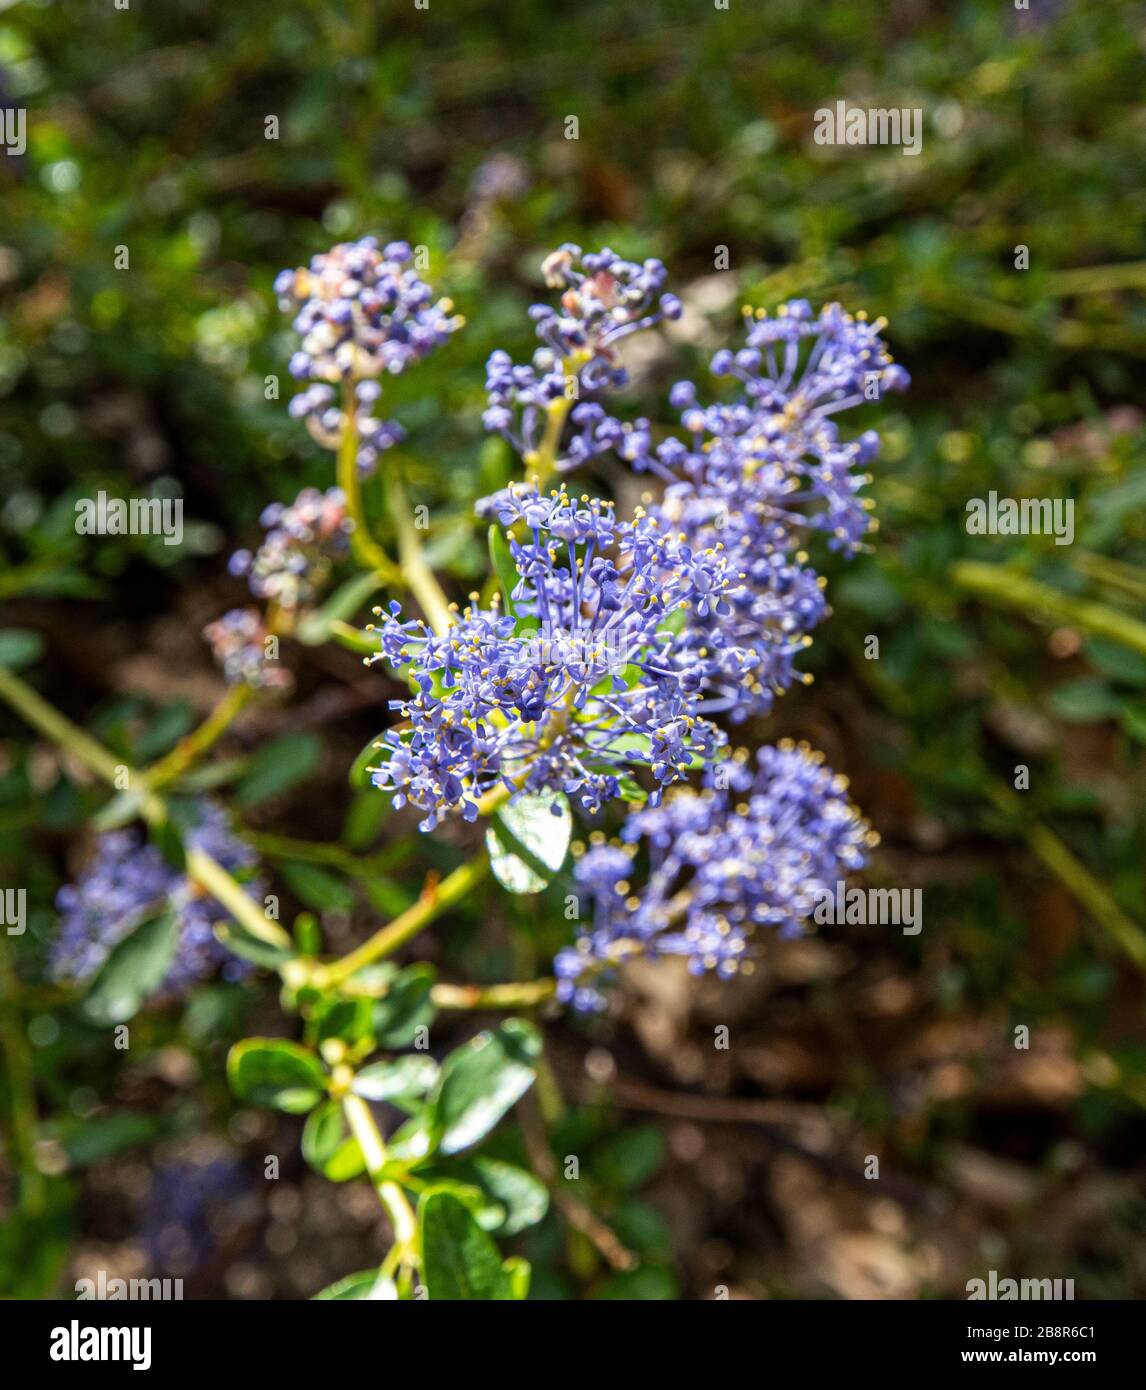 Ceanothus diversifolius aka pinemat is a tiny flowering shrub native to the mountains of California. Stock Photo